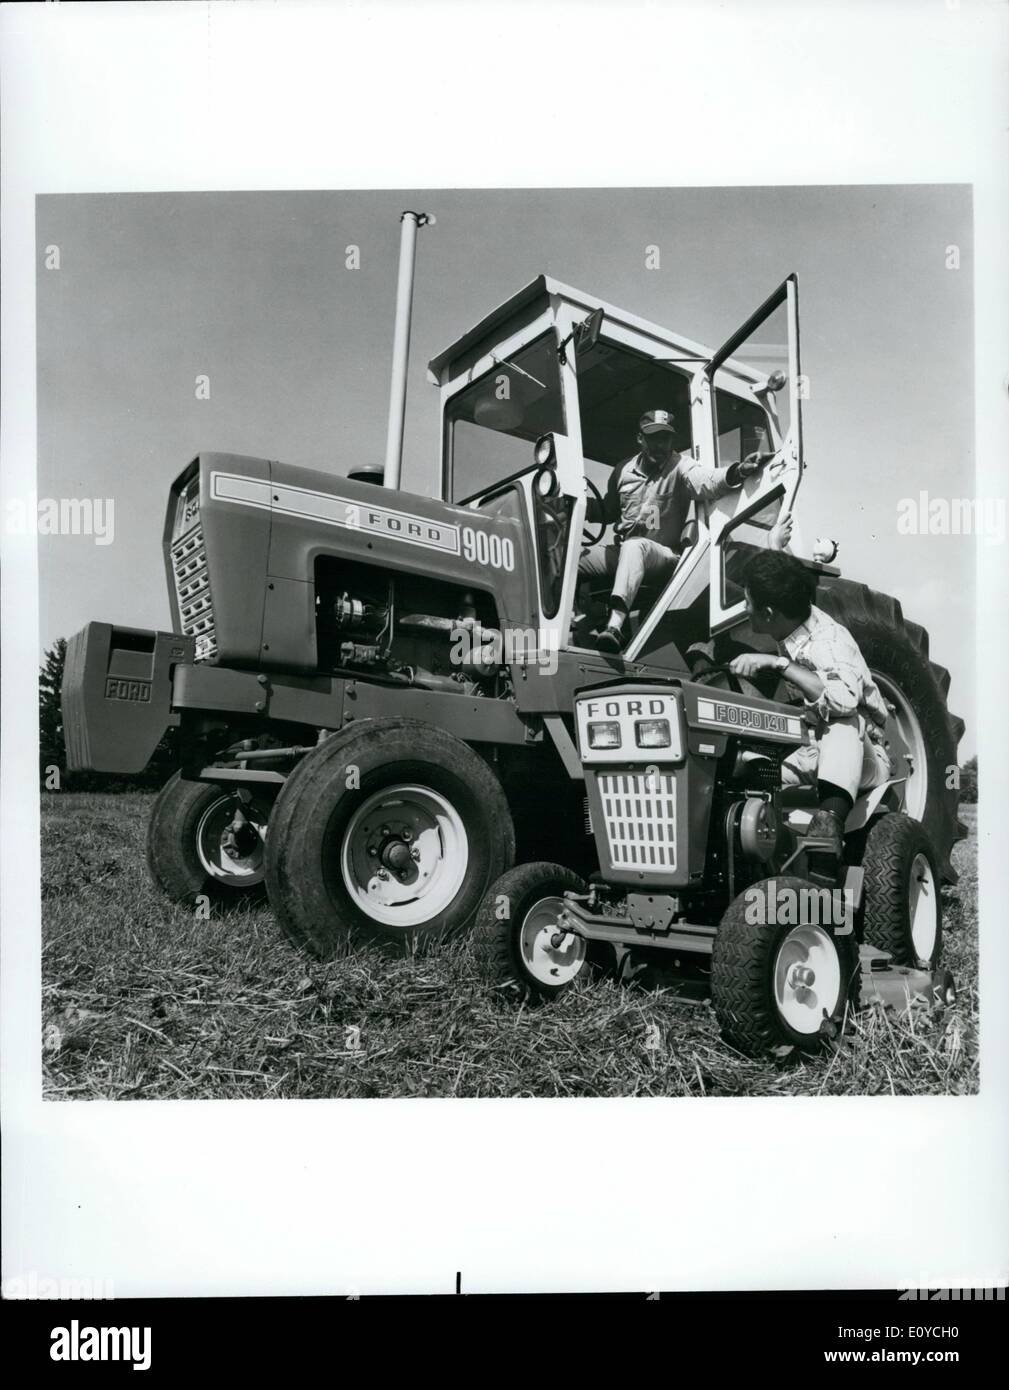 Nov 11, 1969 - Nuevos tractores Span Rango de potencia ----los agricultores  modernos como los compradores de automóviles nuevos--desea mayor potencia y  comodidad opciones para tractores agrícolas. Ford Motor Company de nuevo